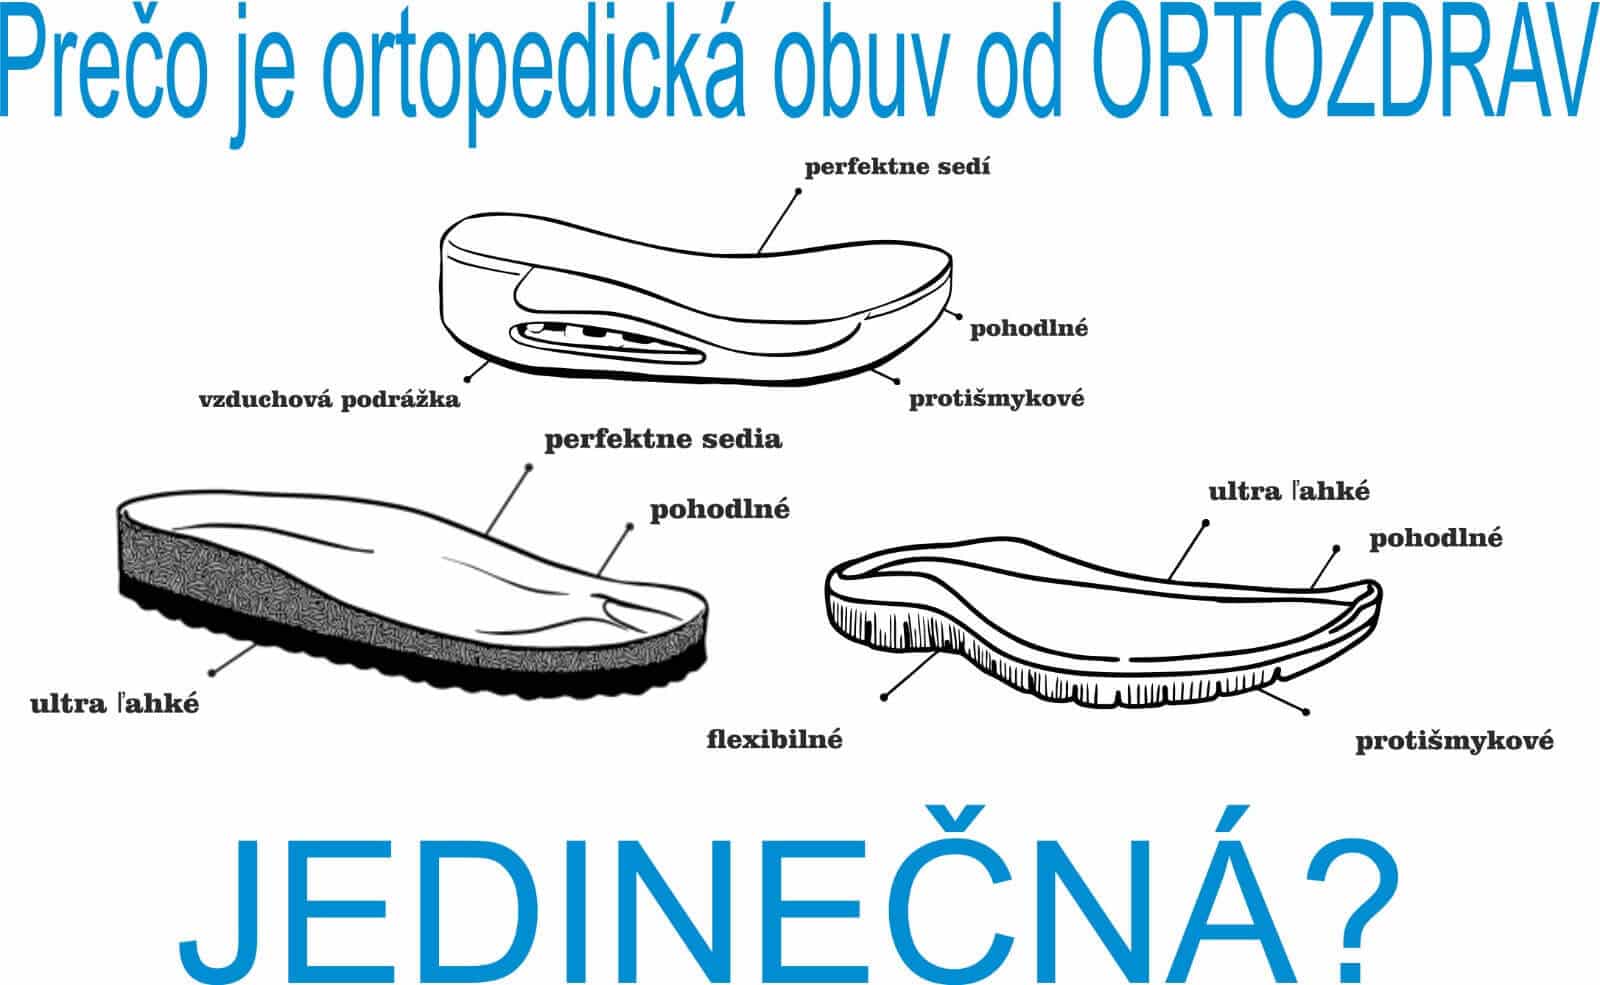 prečo je ortopedicka obuv od ortozdrav jedinečna